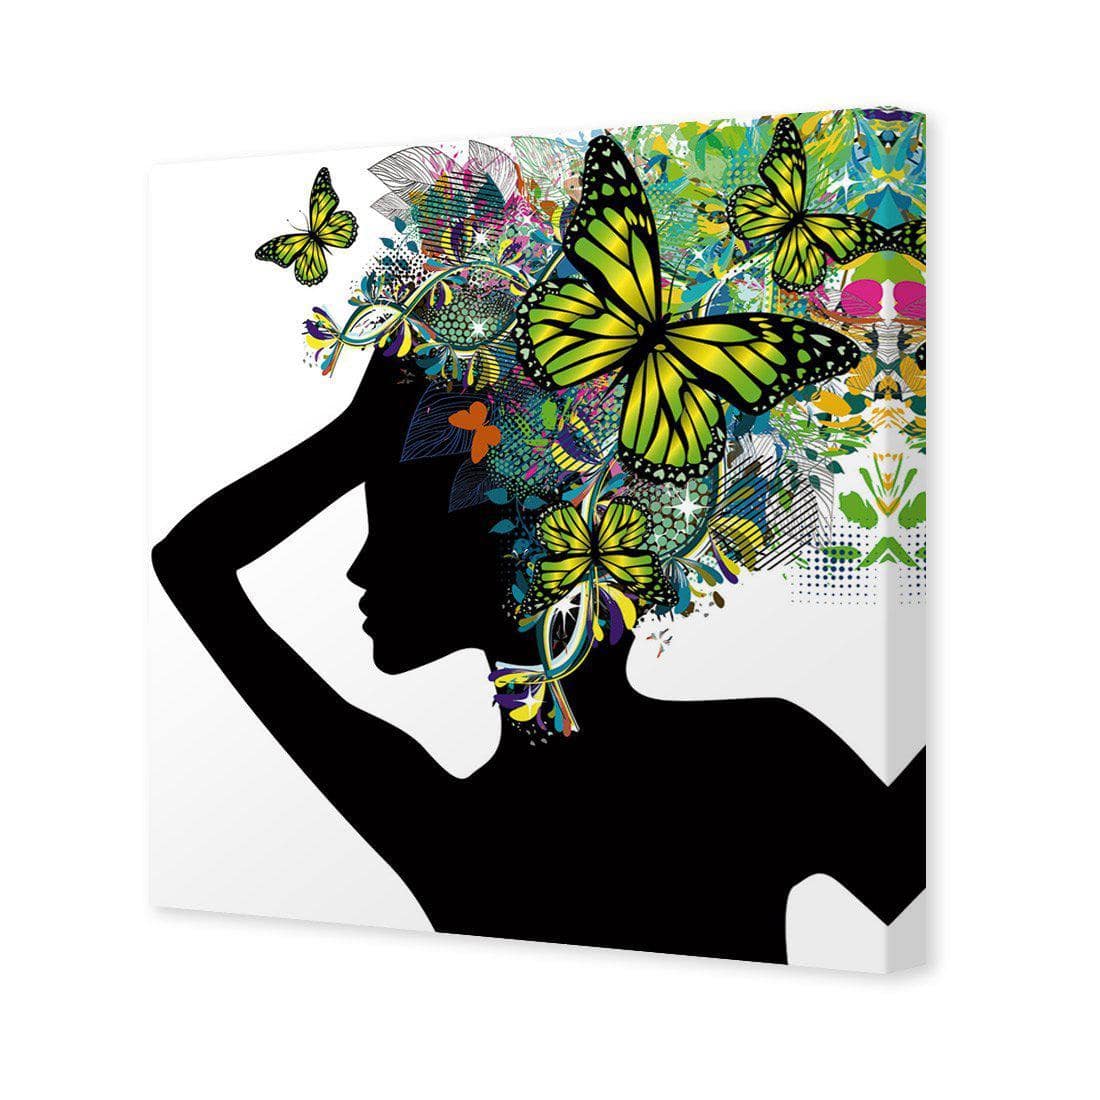 Silhouette Of Butterflies Canvas Art-Canvas-Wall Art Designs-30x30cm-Canvas - No Frame-Wall Art Designs